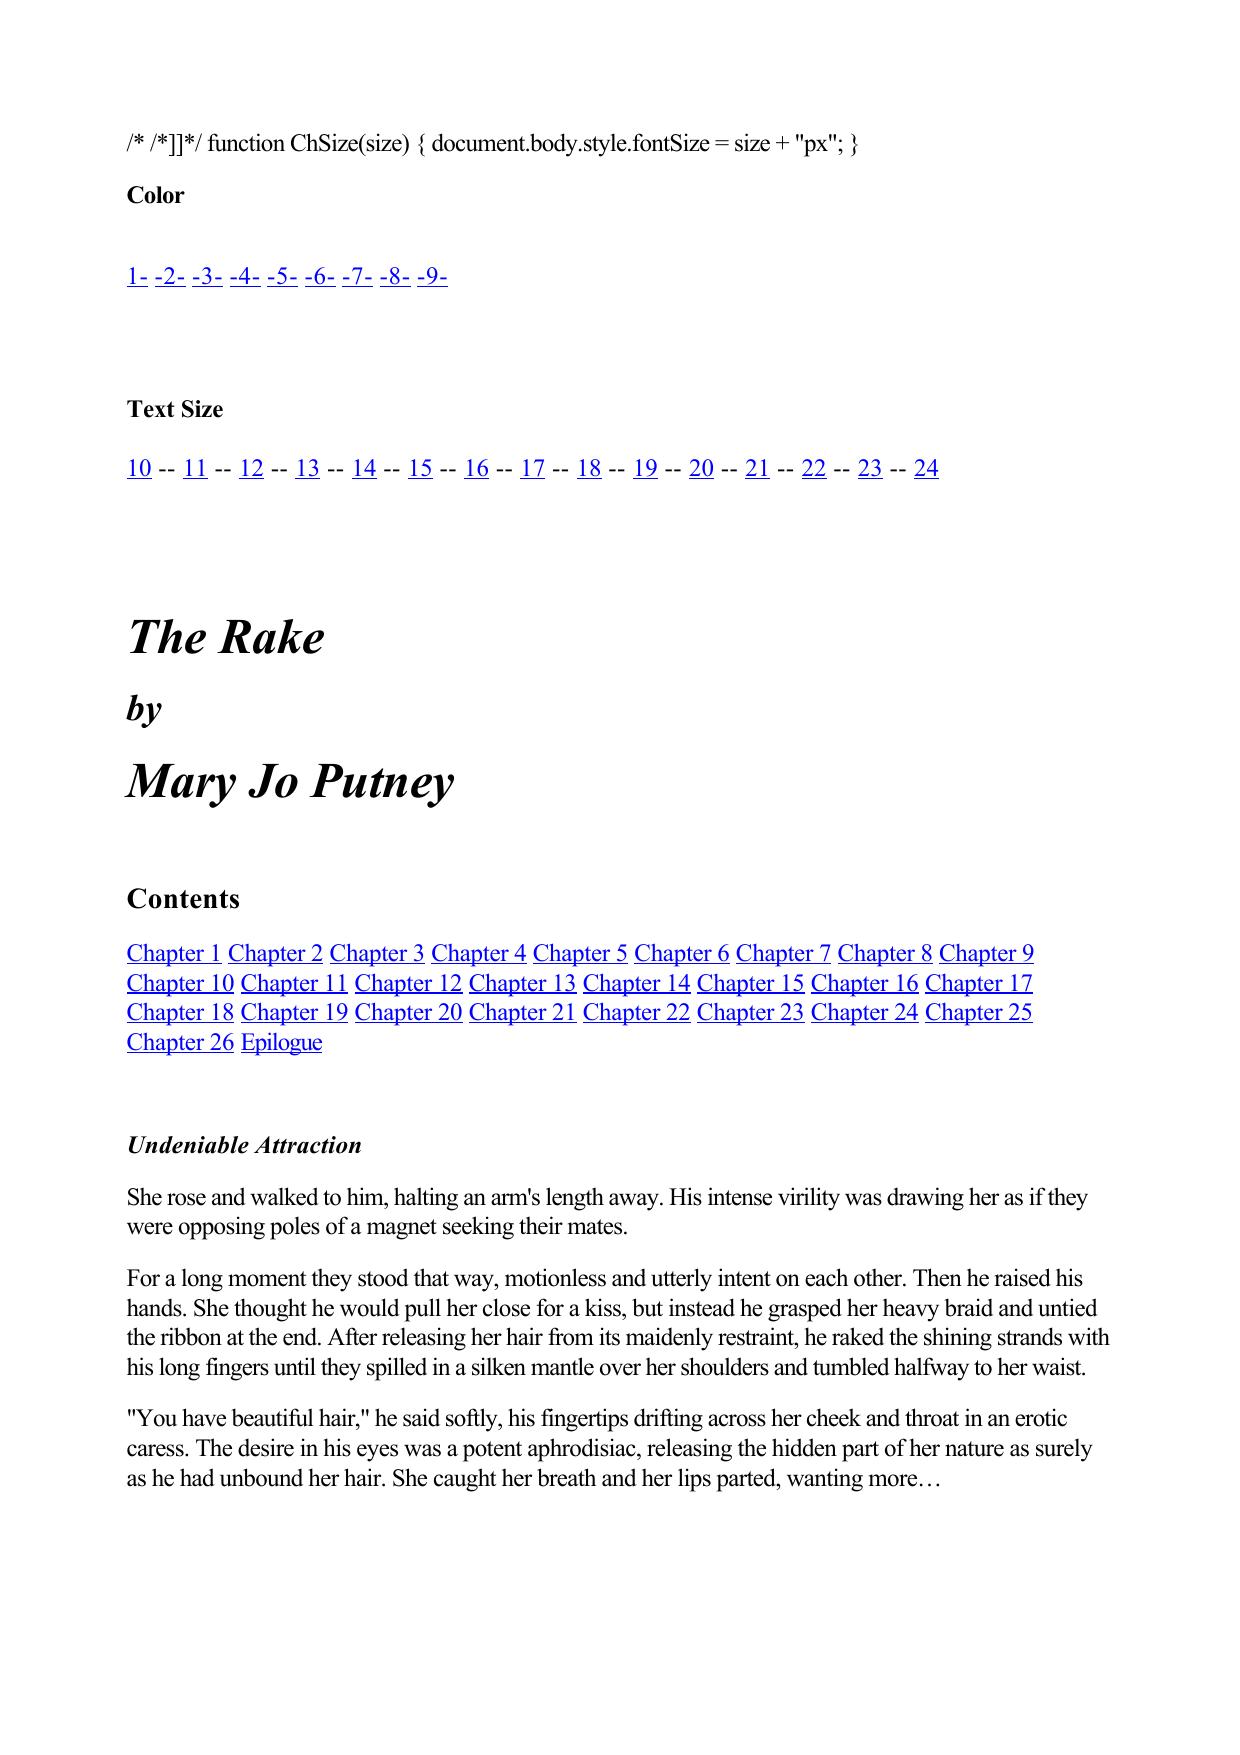 The Rake by Putney Mary Jo